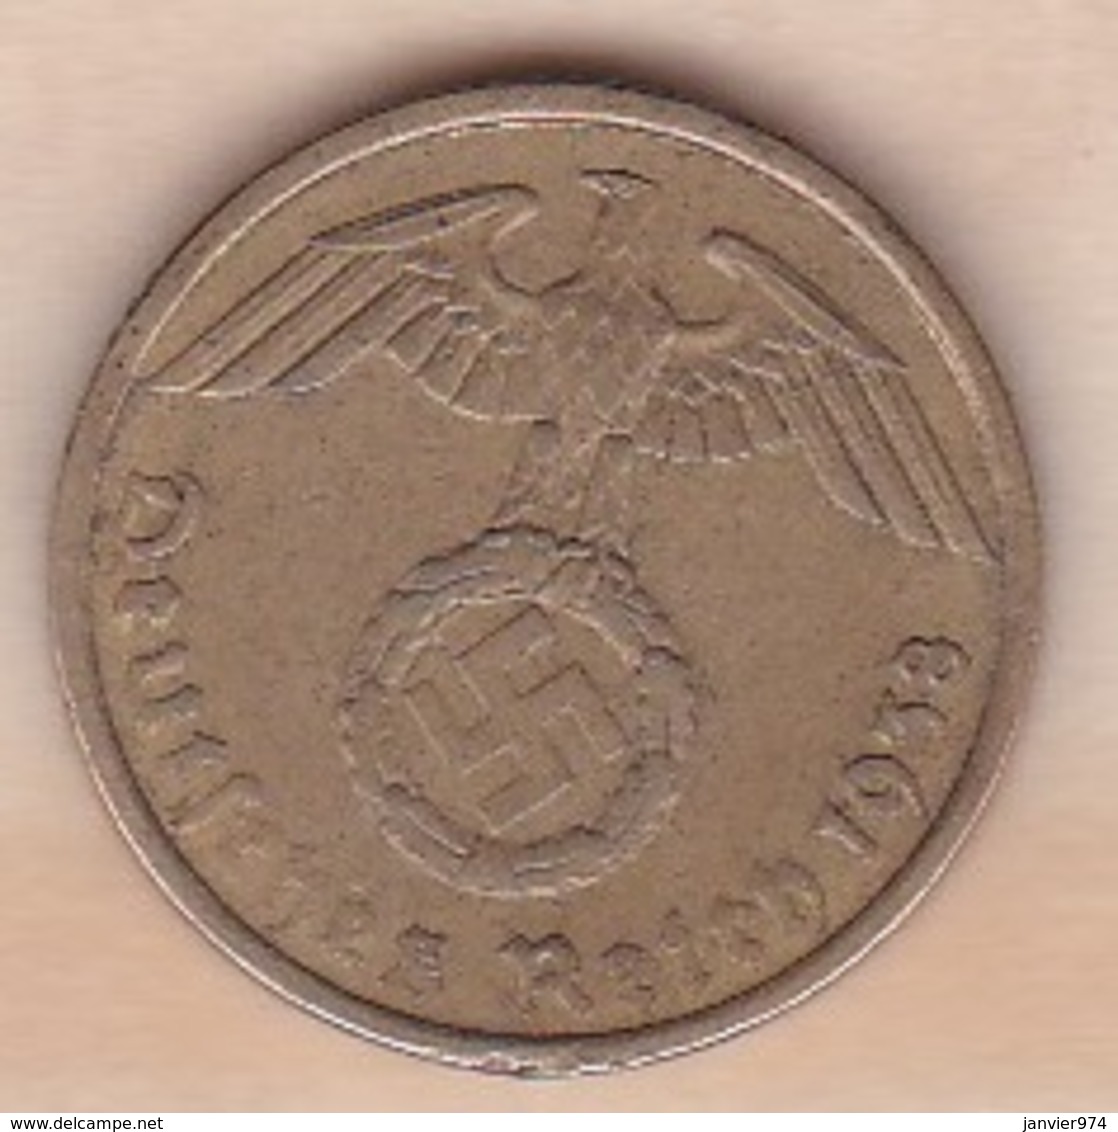 5 Reichspfennig 1938 G (KARLSRUHE)   . Bronze-aluminium - 5 Reichspfennig